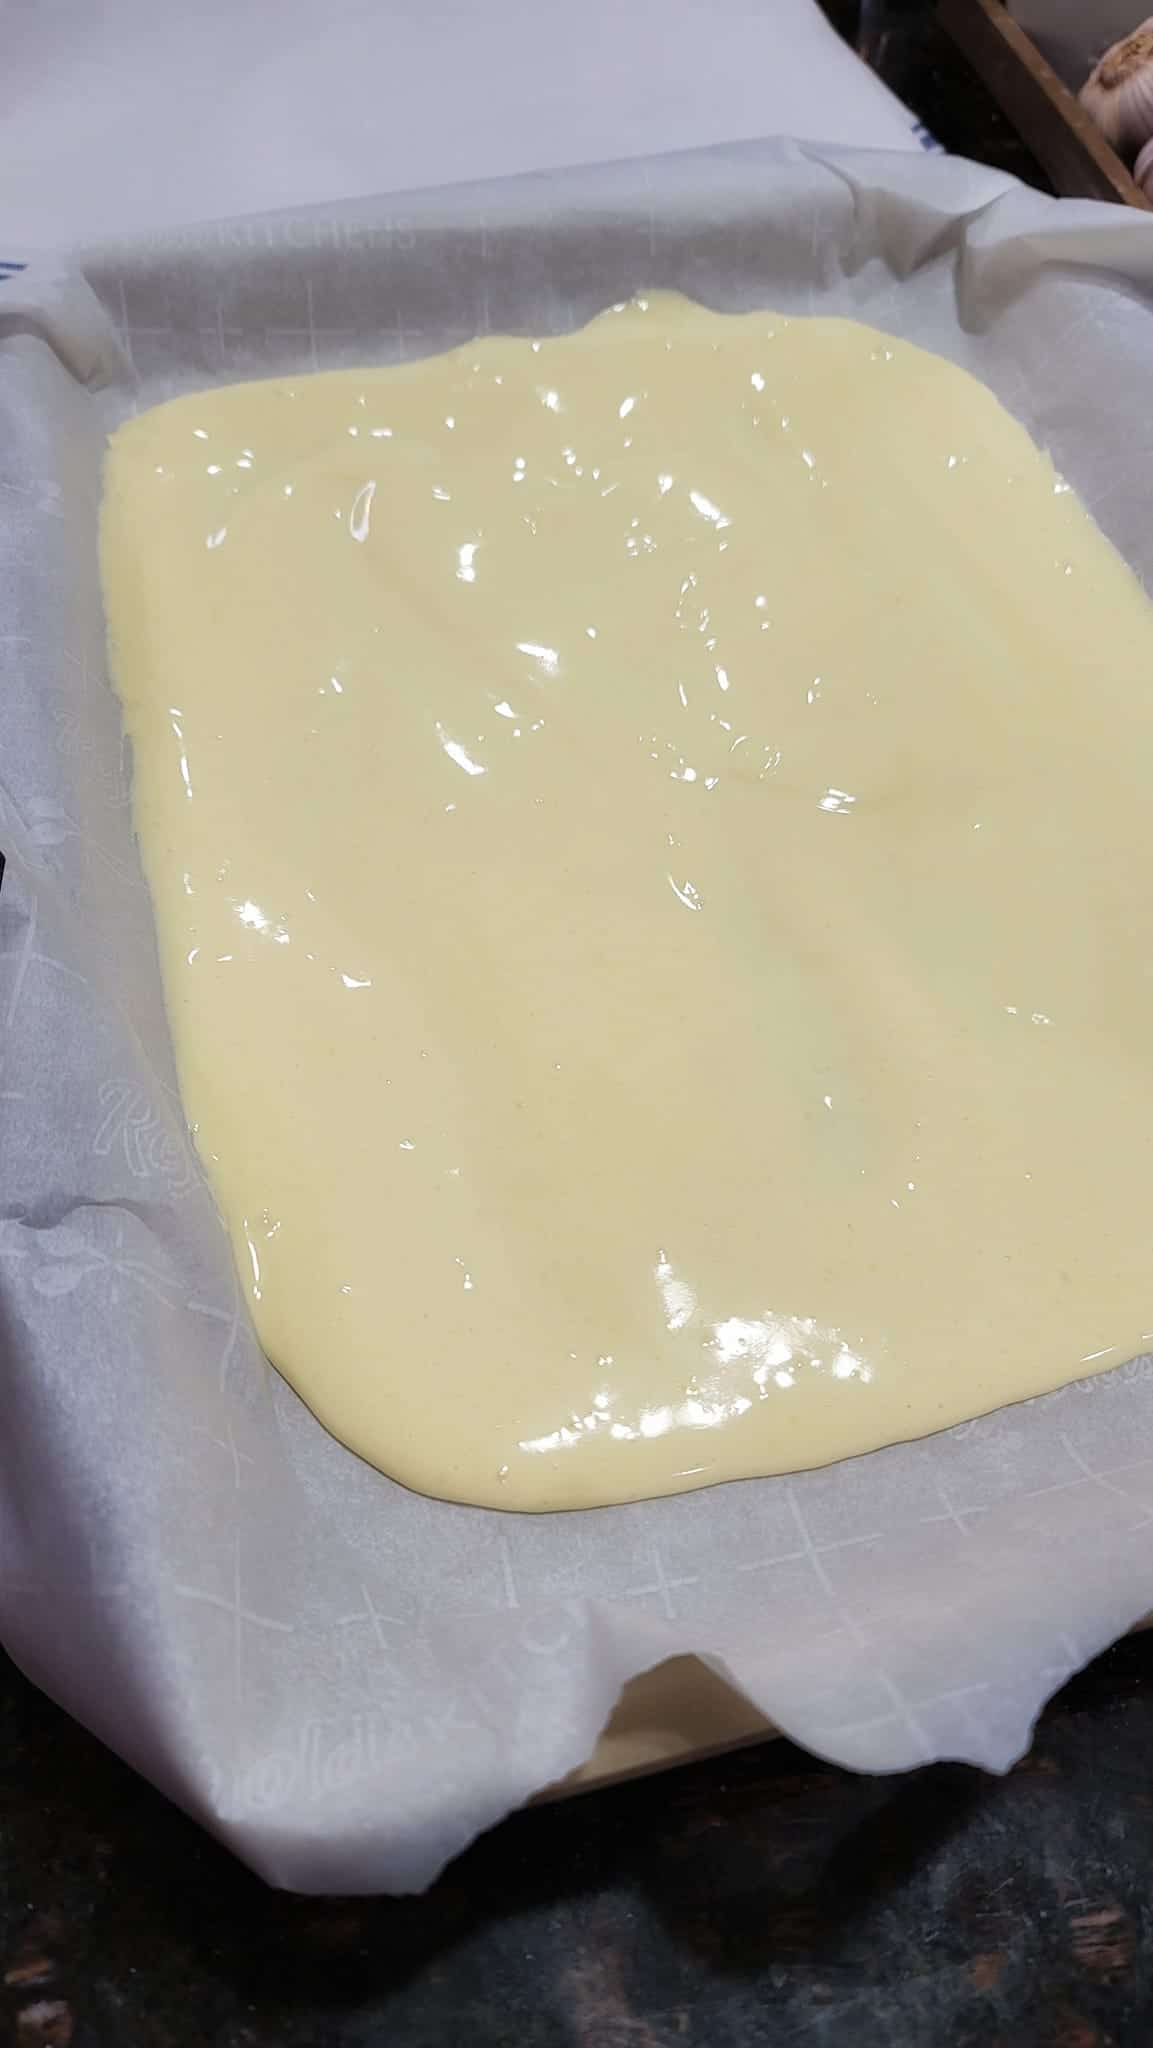 yellow sponge cake batter in pan